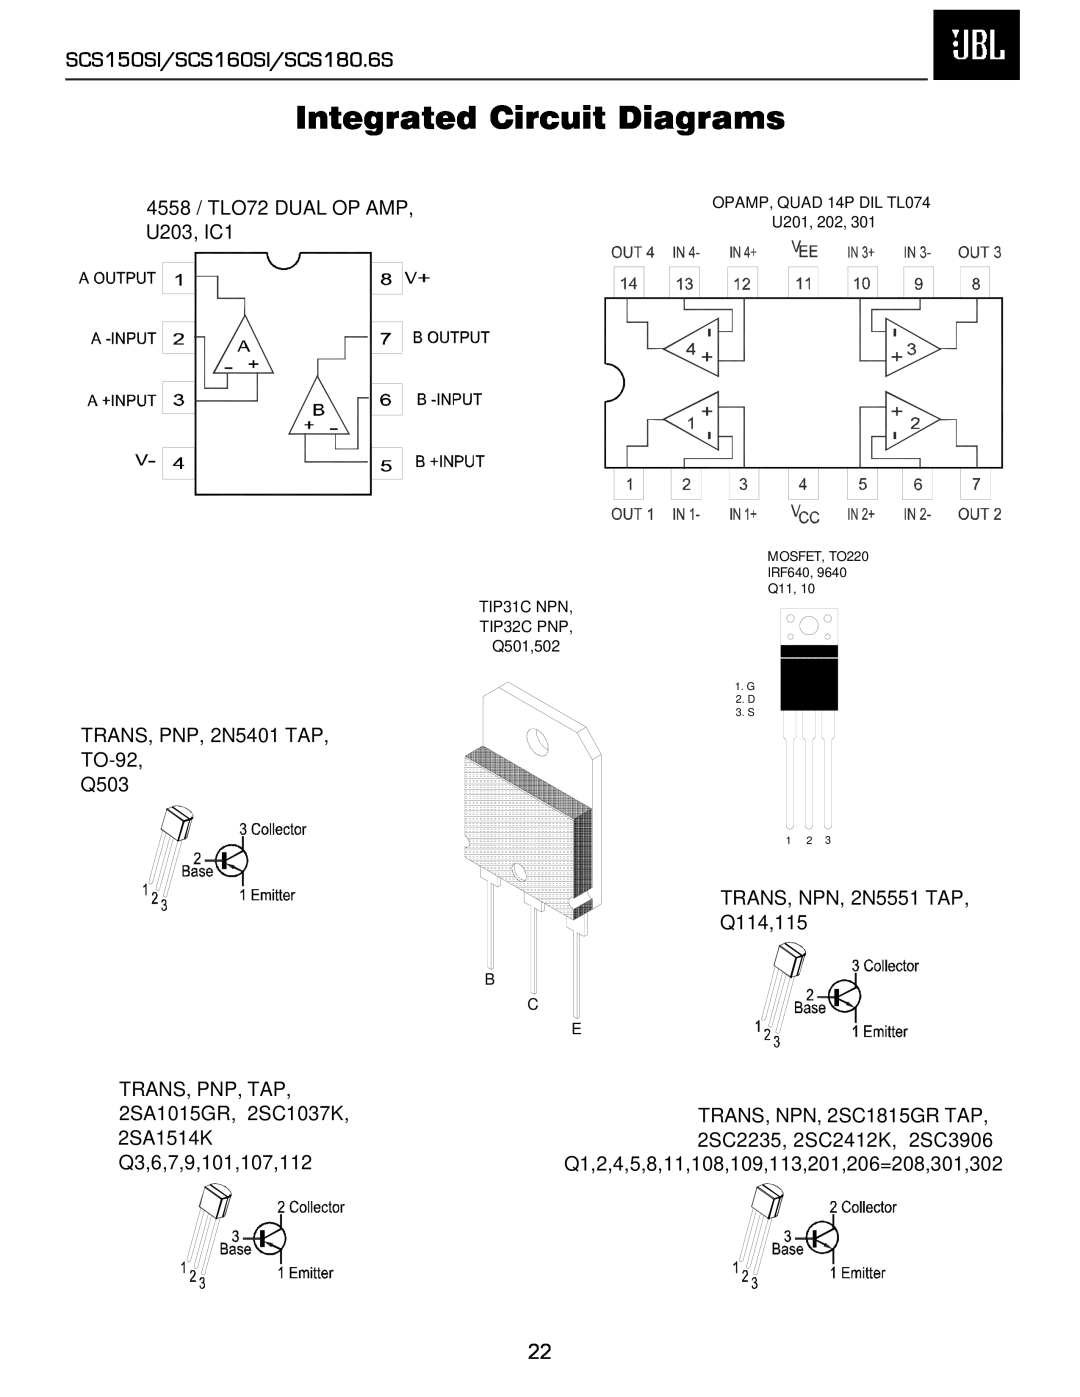 JBL service manual Integrated Circuit Diagrams, SCS150SI/SCS160SI/SCS180.6S 